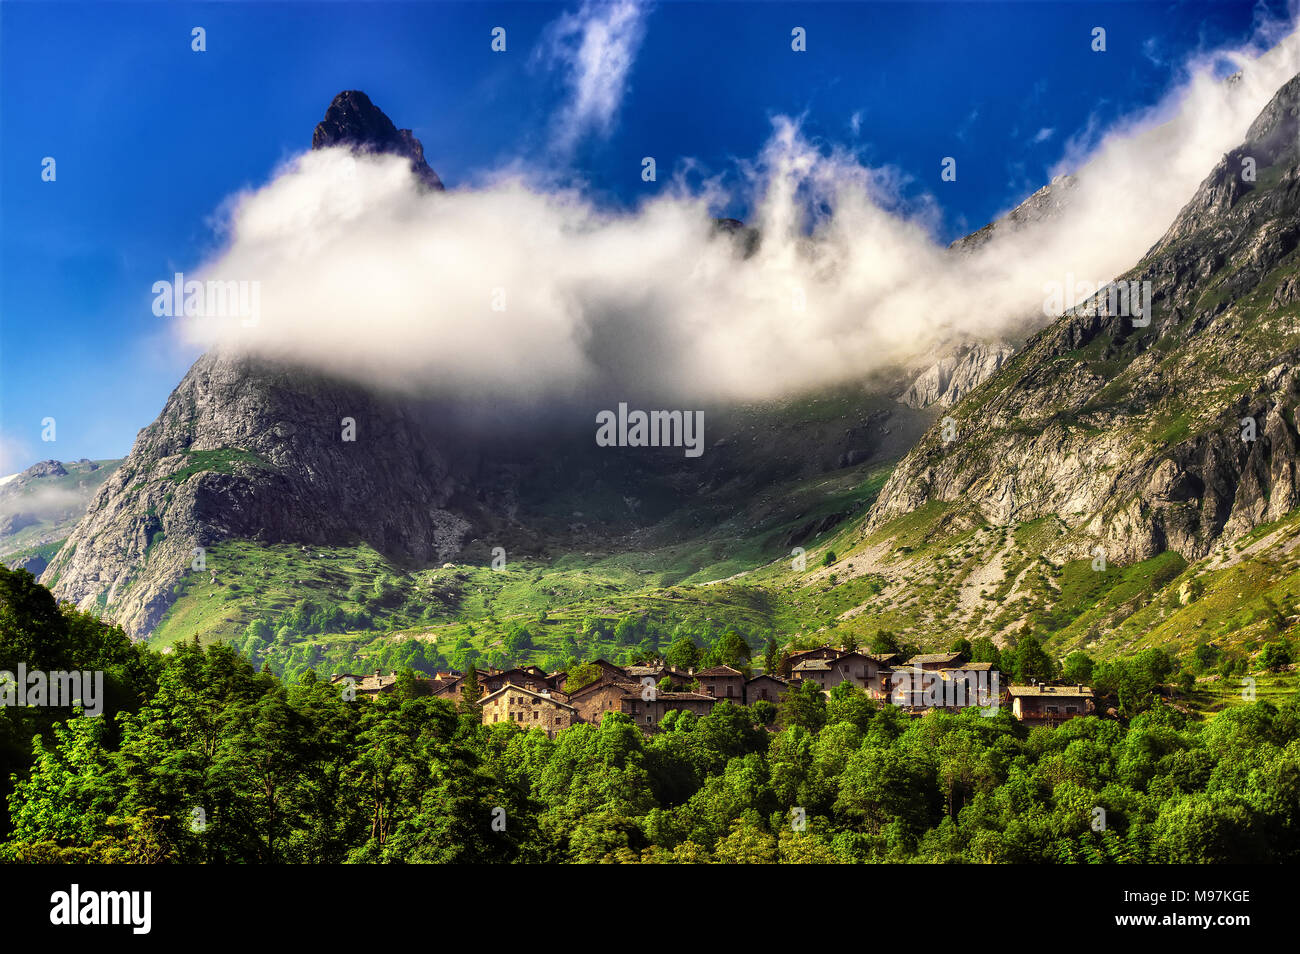 Il villaggio di Chiappera, in alta Valle Maira in Piemonte, surmonted dal Provenzale Rock, parzialmente avvolto dalle nuvole. Foto Stock